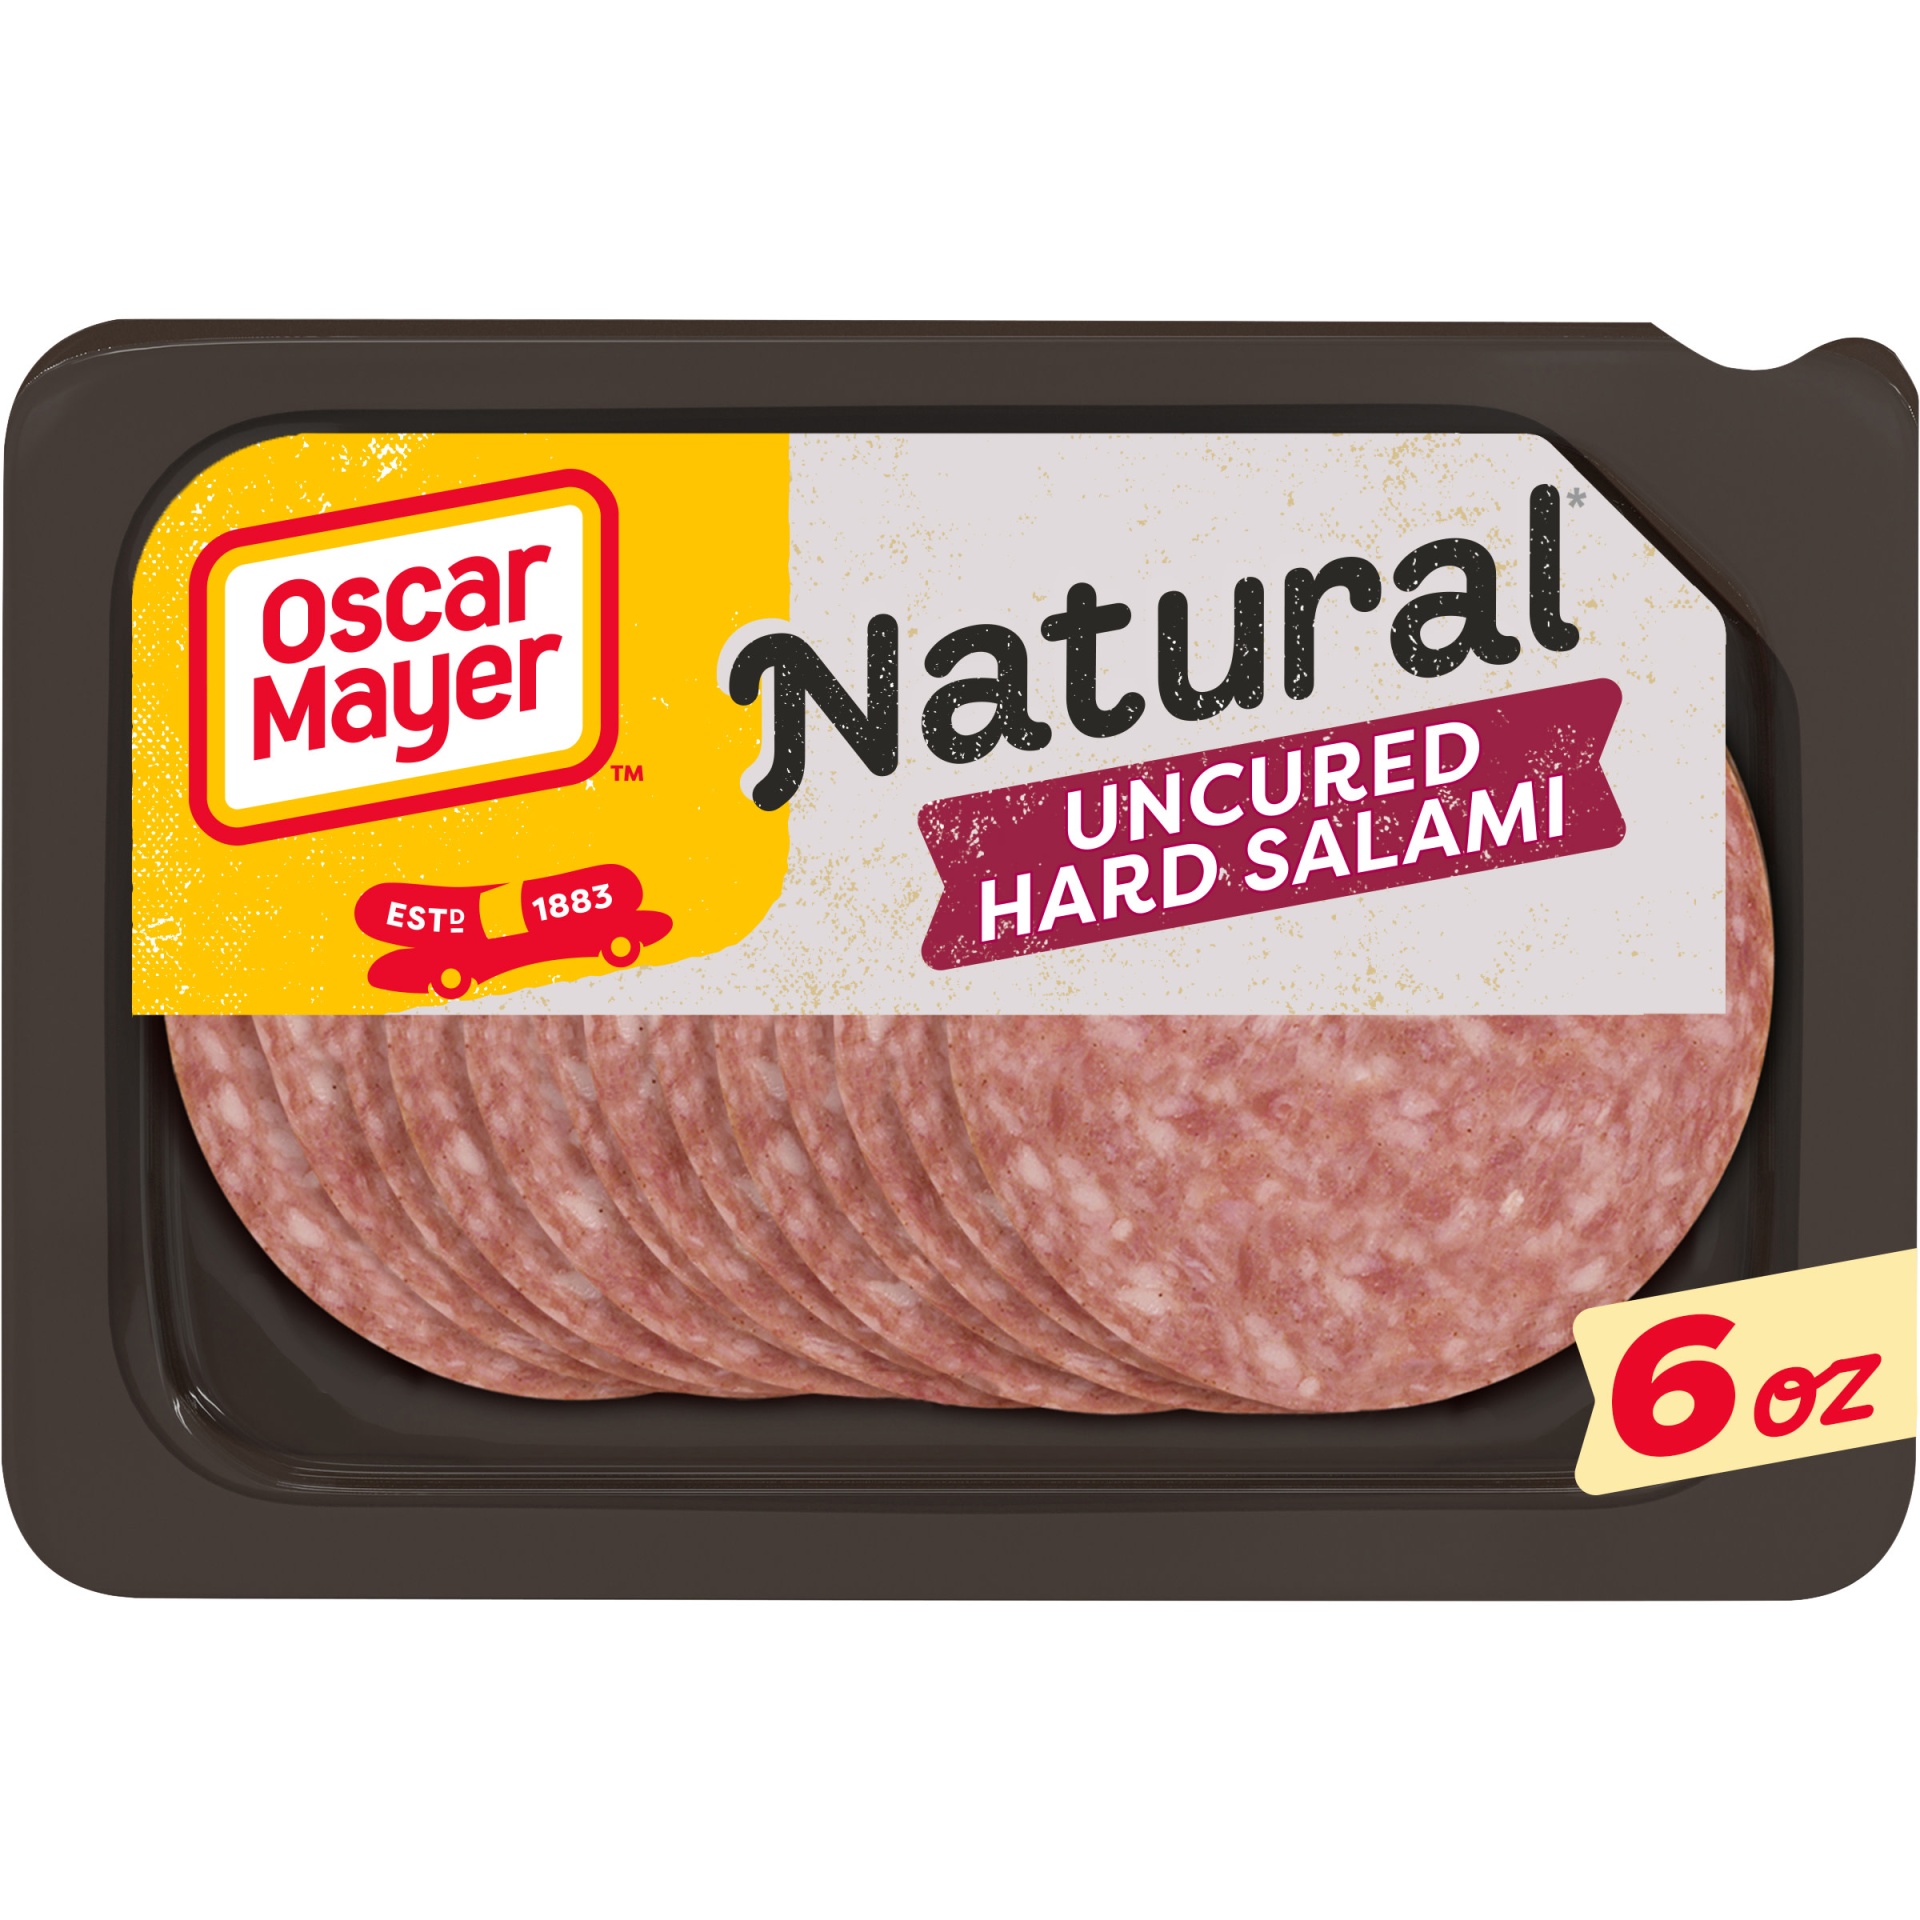 slide 1 of 2, Oscar Mayer Natural Uncured Hard Salami Sliced Lunch Meat Tray, 6 oz